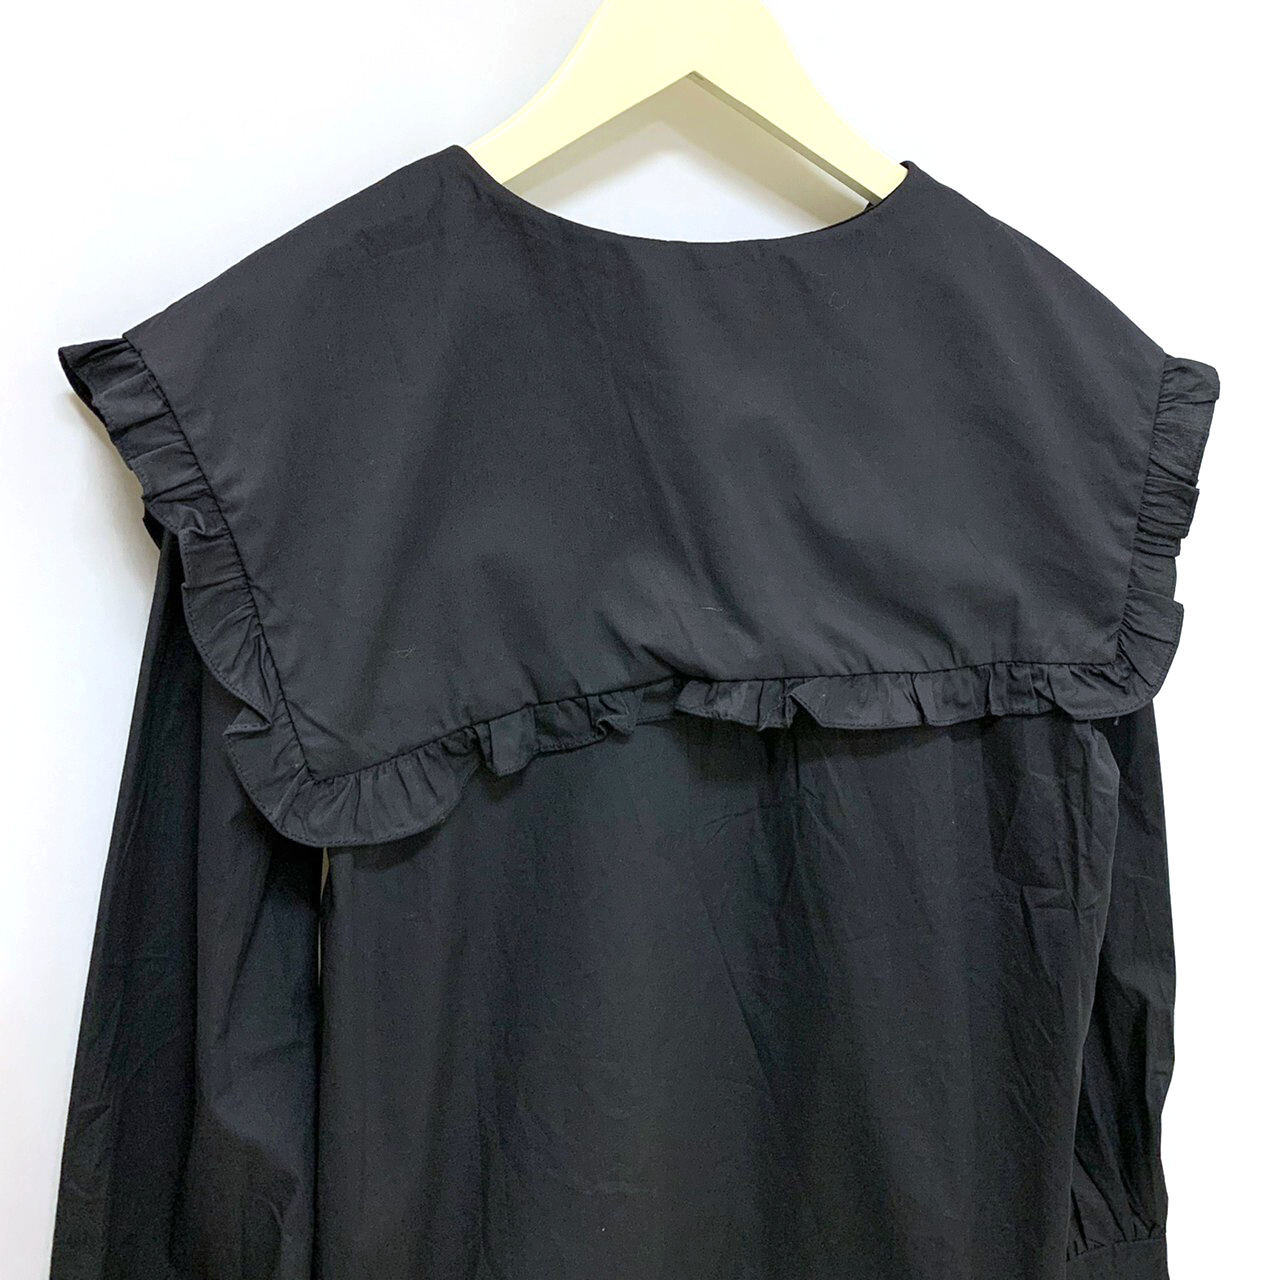 モード ジャンパースカート アートプリント サロペットスカート Black/Cubism